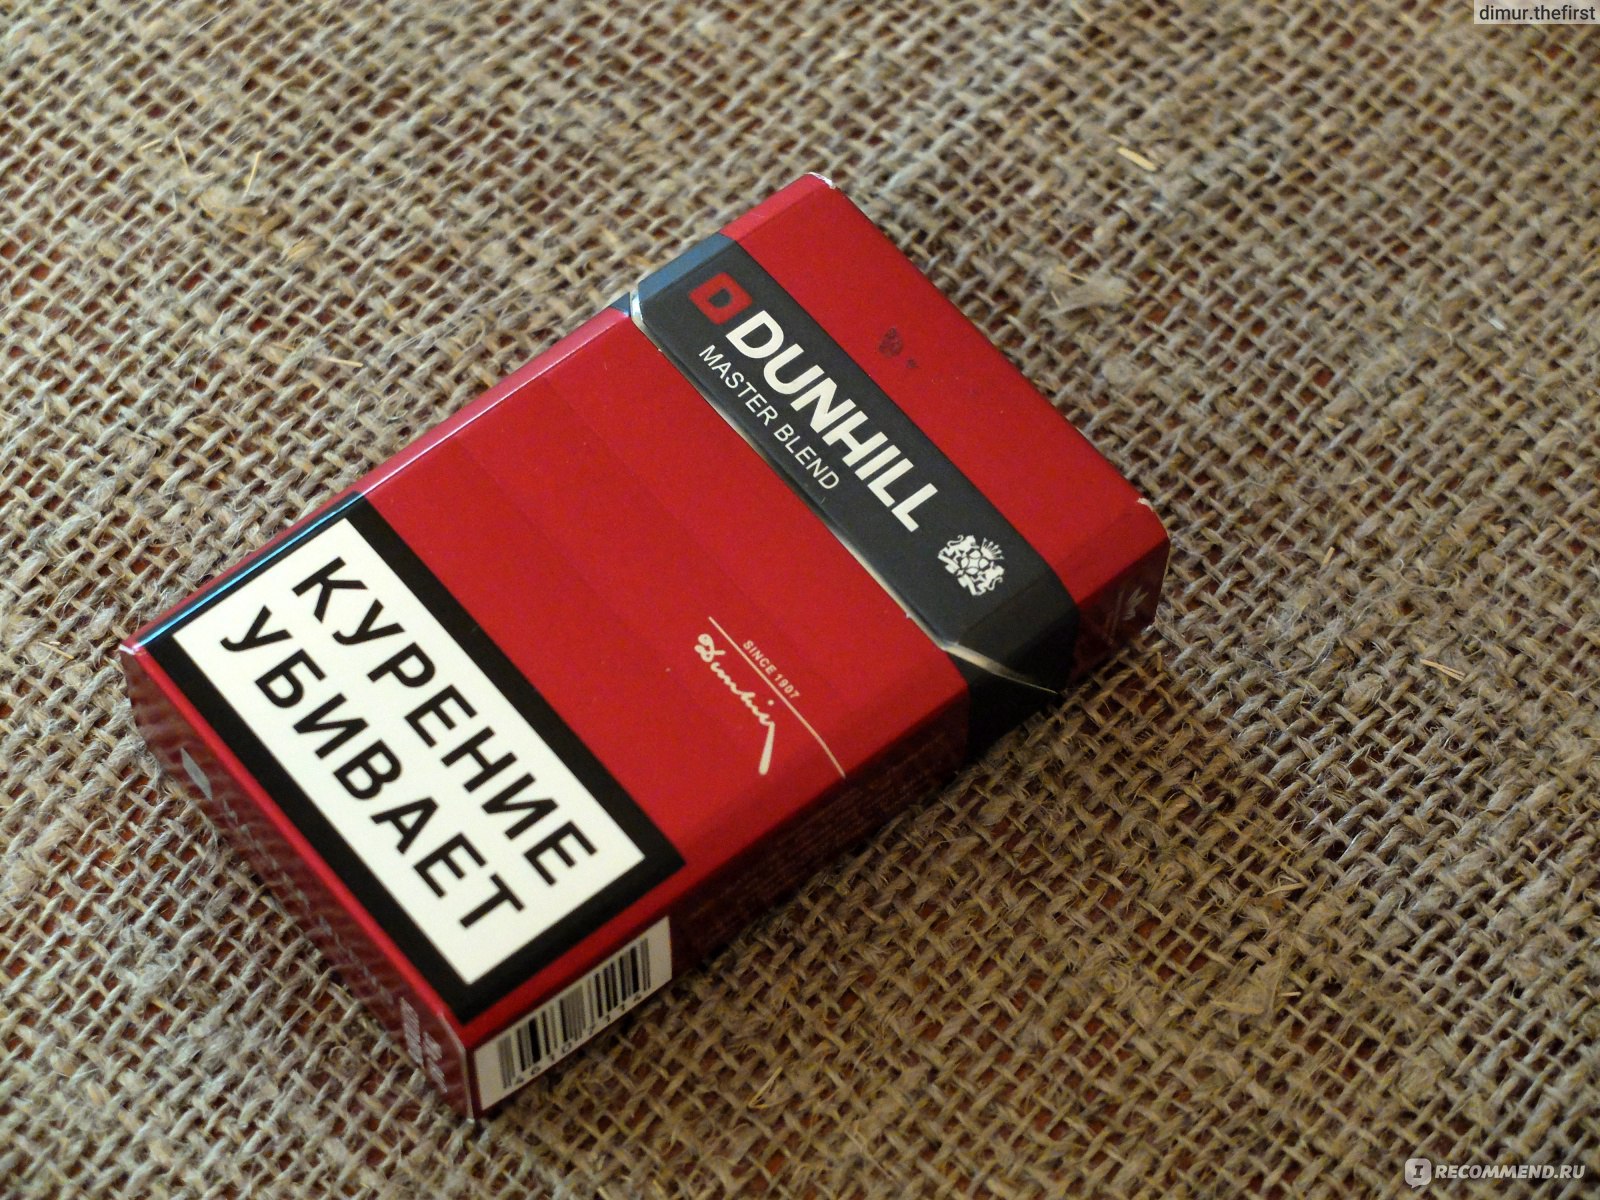 Топ сигарет. Сигареты Данхилл ред. Dunhill сигареты красные. Данхилл Инфинити сигареты. Данхилл Арома ред сигареты.